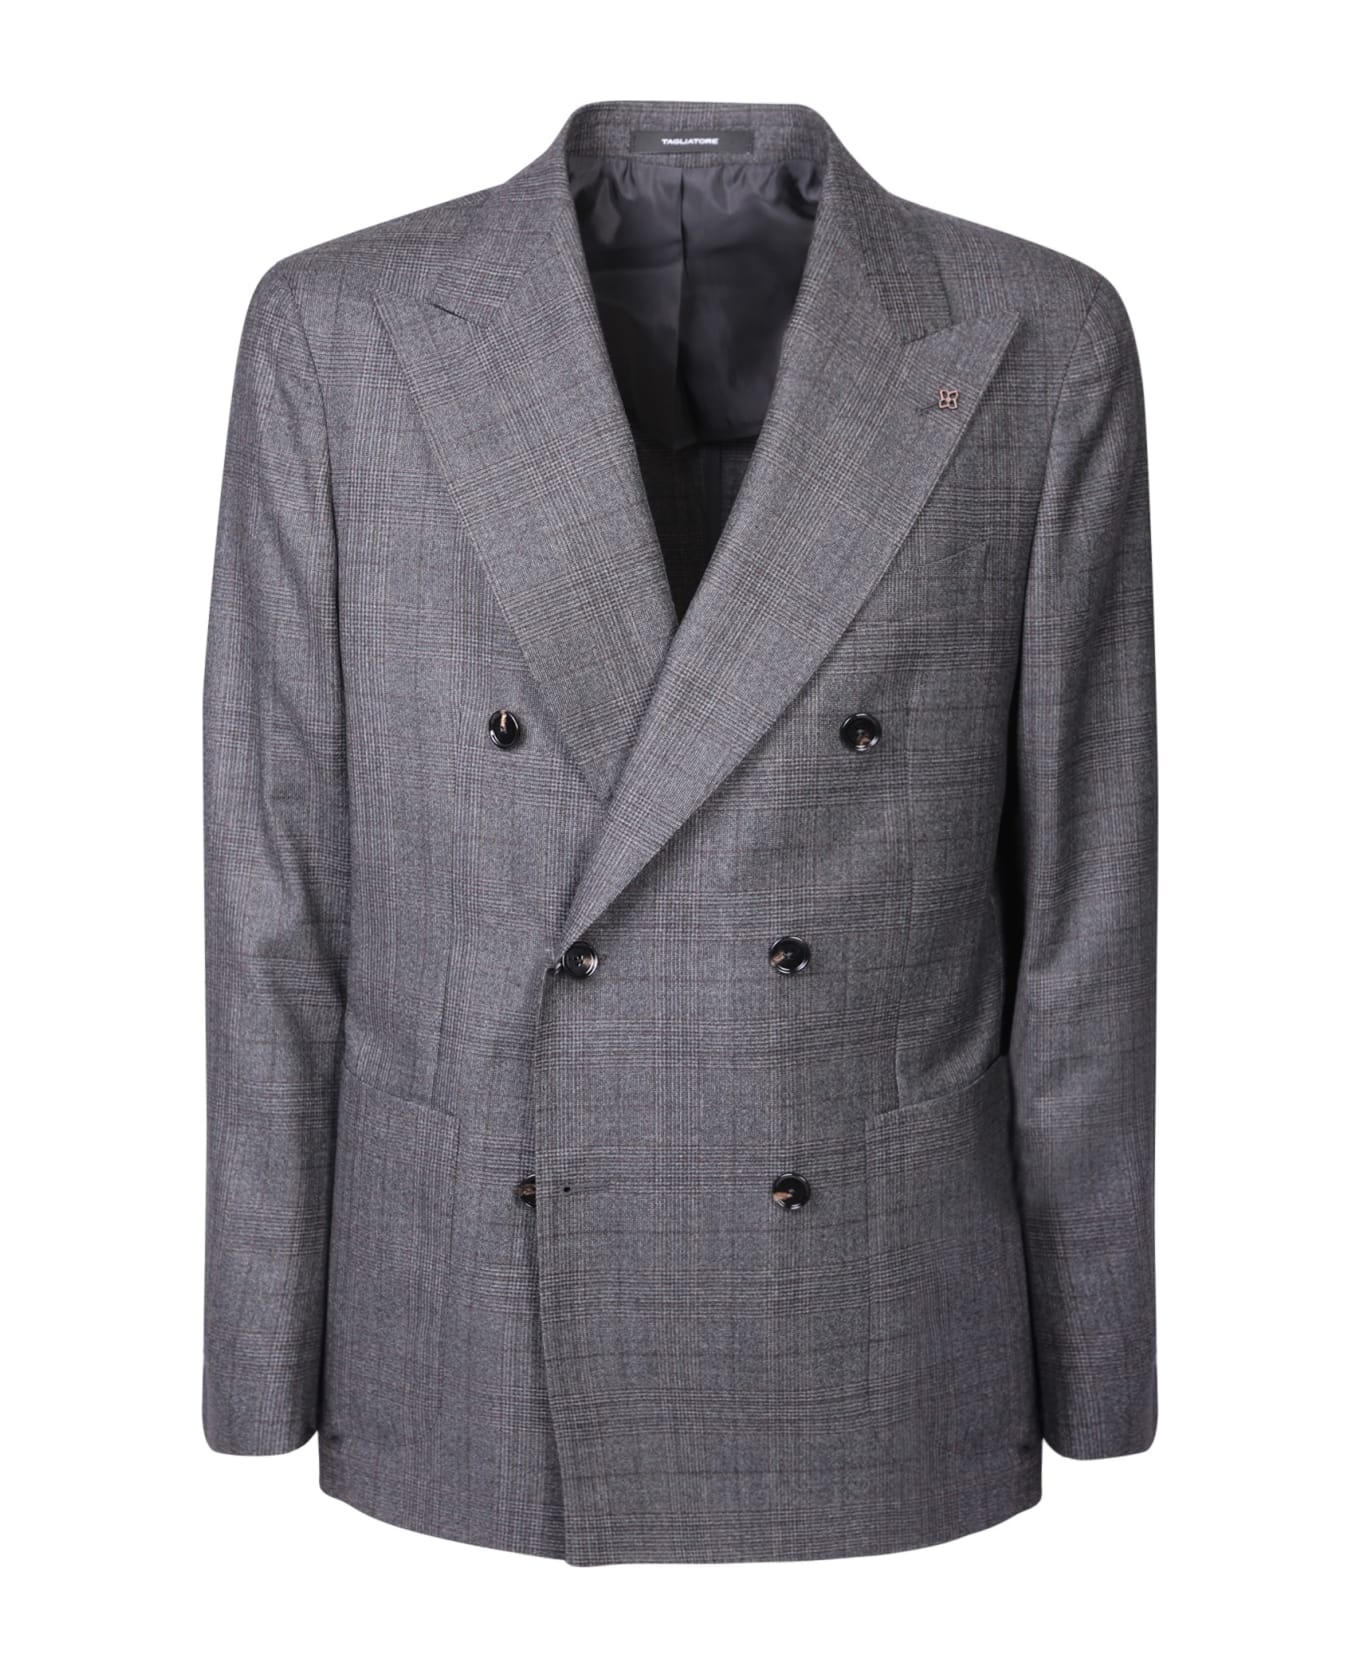 Tagliatore Vesuvio Grey Suit - Brown